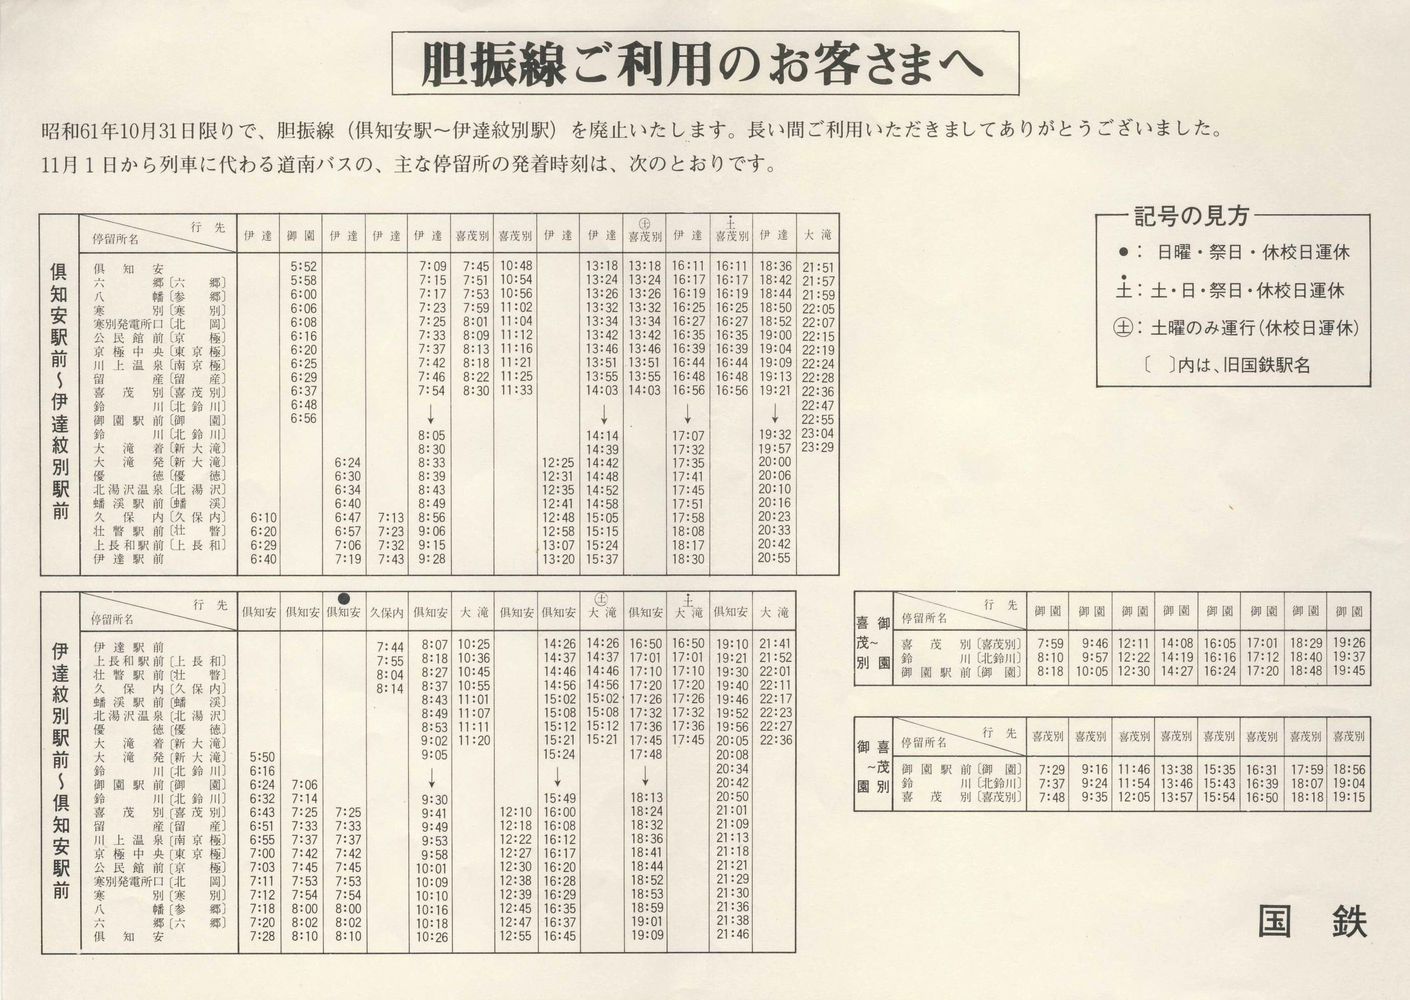 1986-11-01改正_日本国有鉄道_道南バス胆振線時刻表